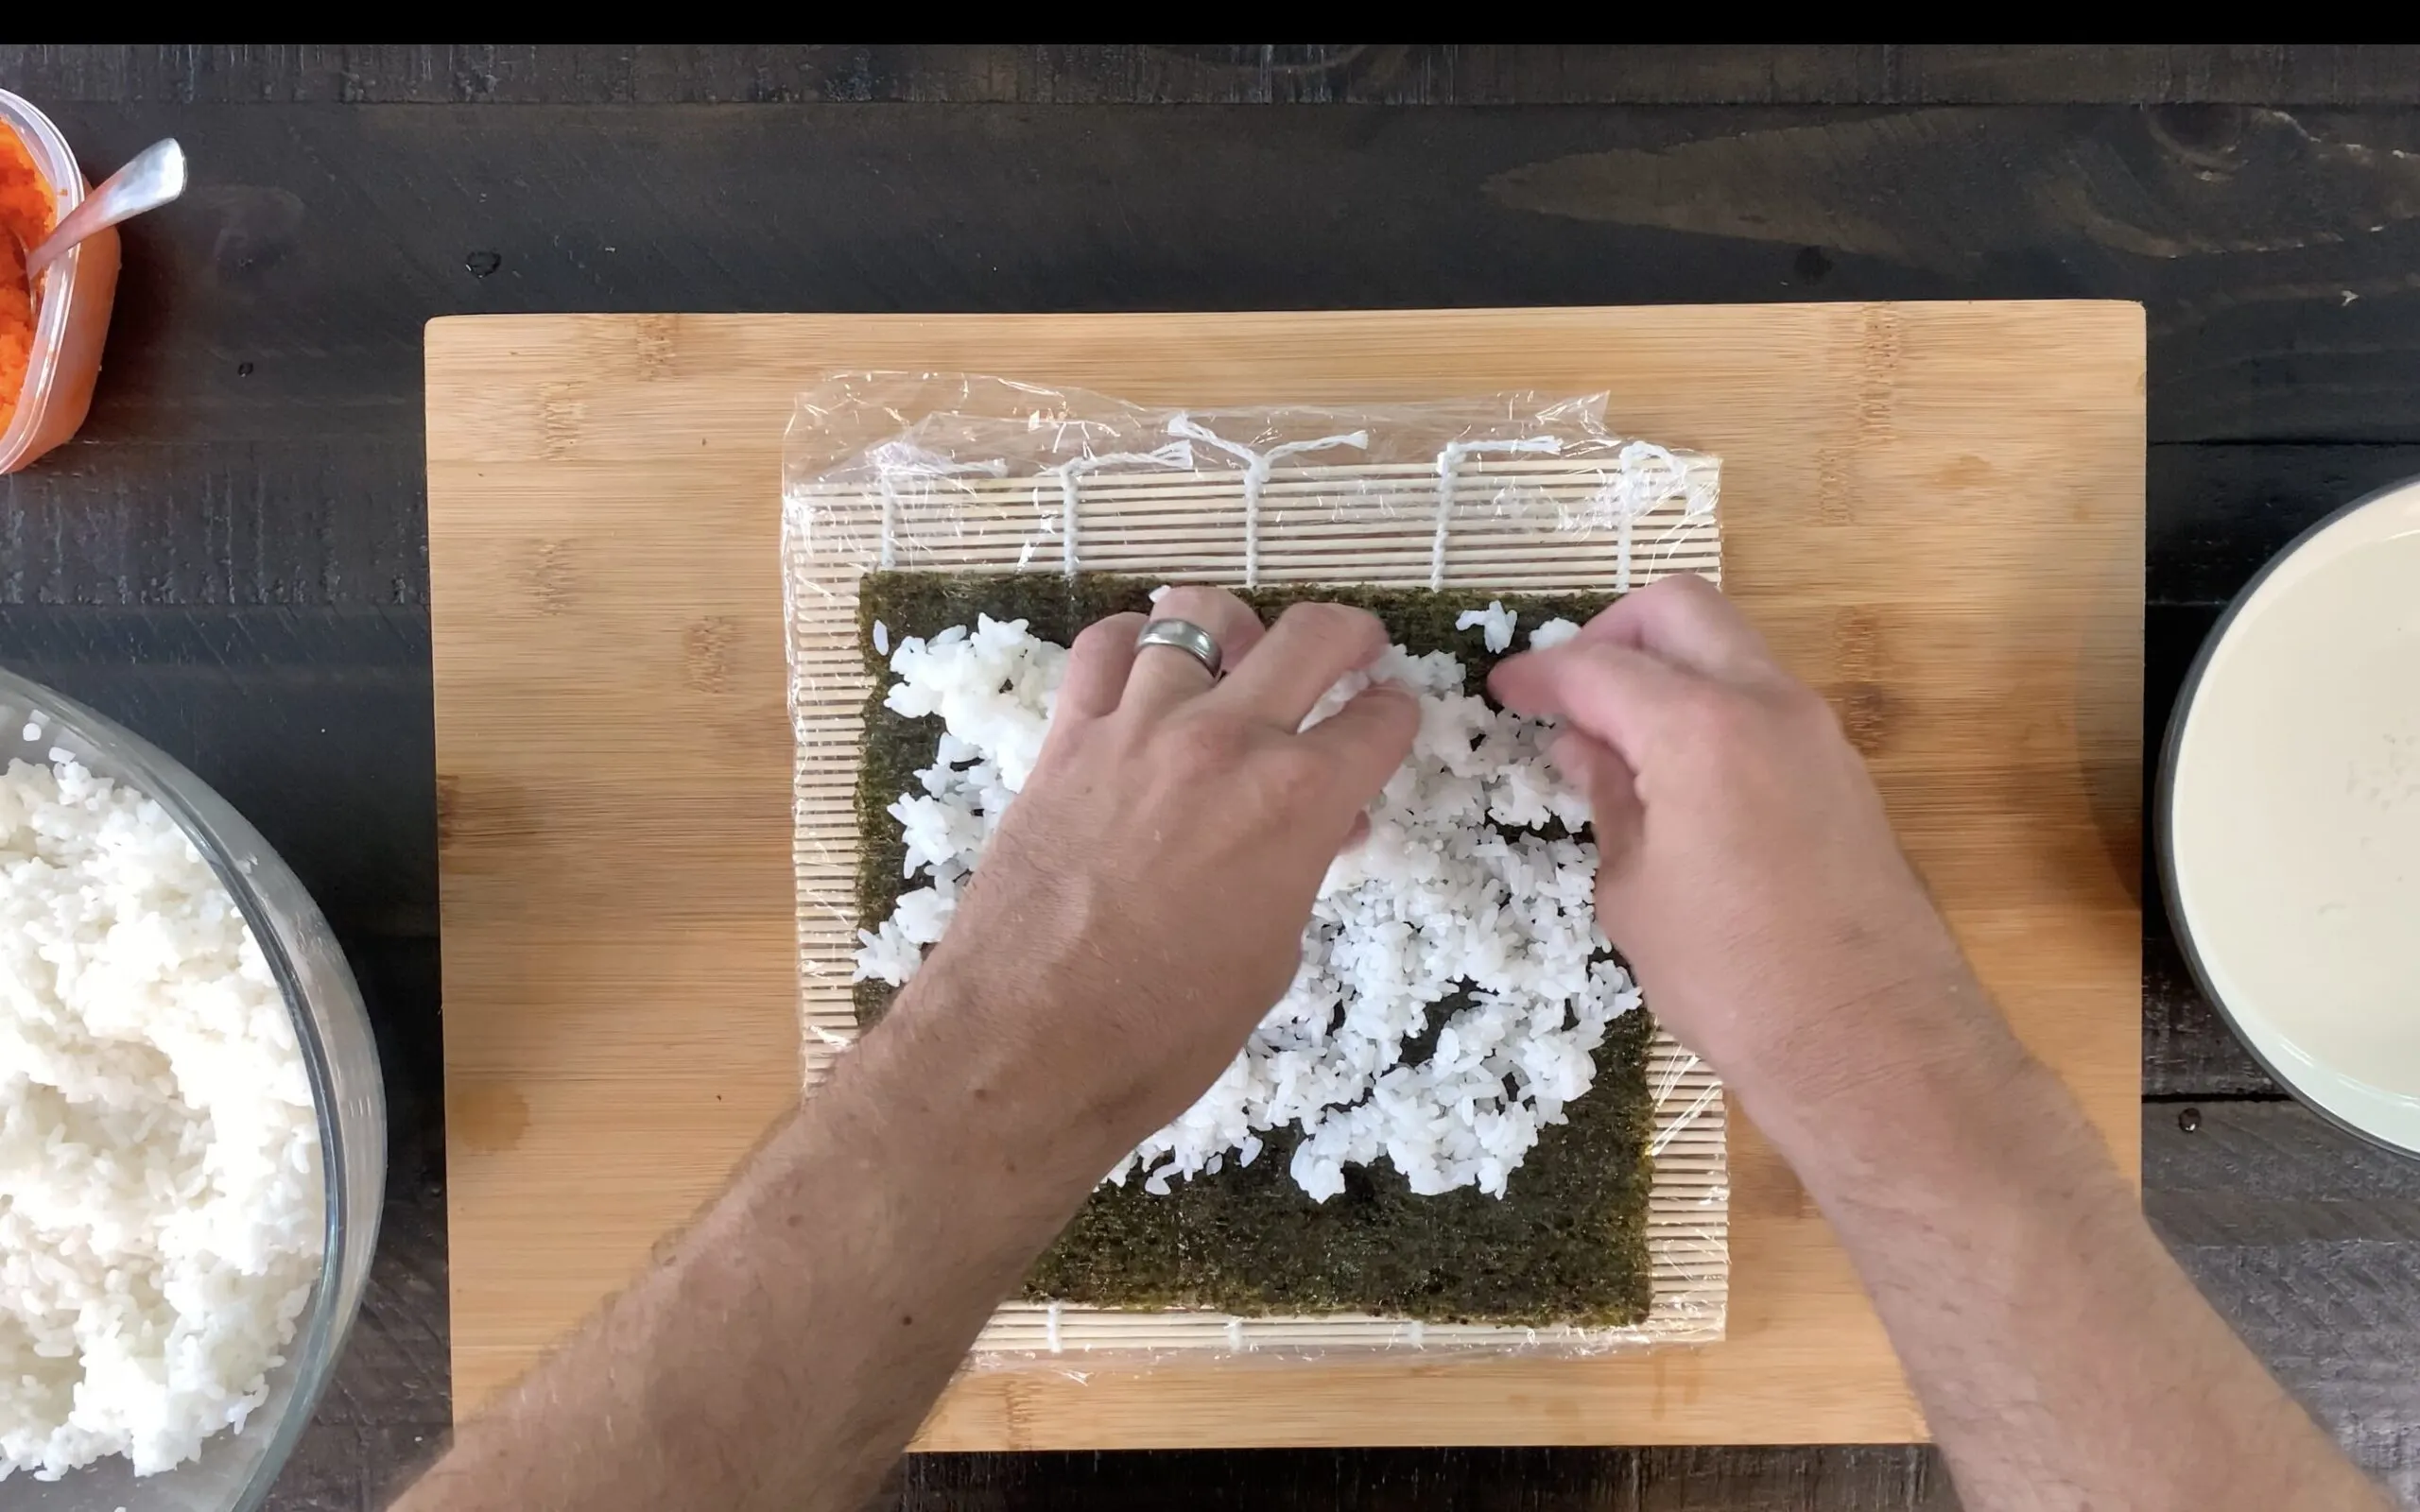 Pressing rice onto nori sheet